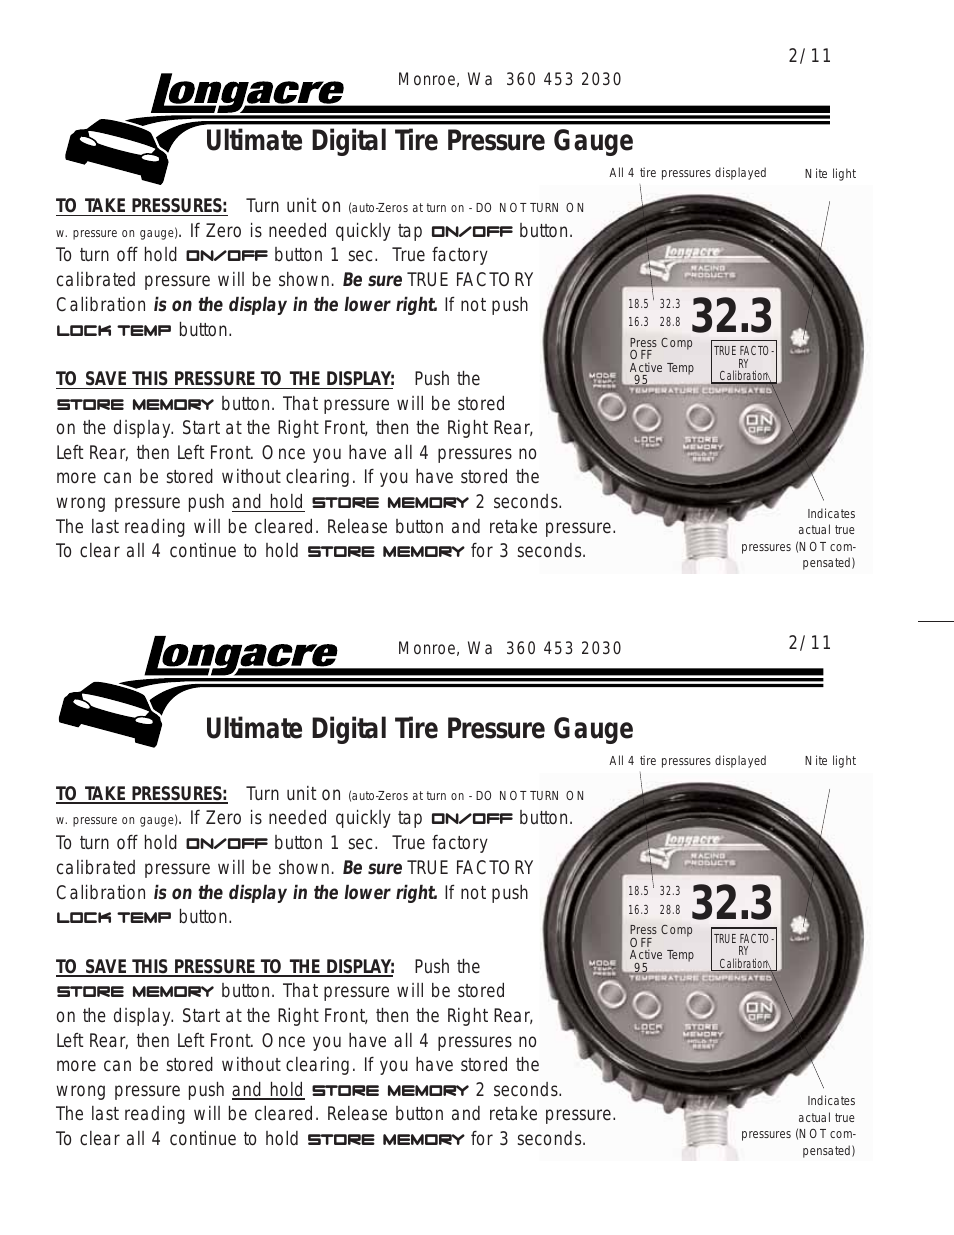 50365 Ultimate Digital Tire Pressure Gauge